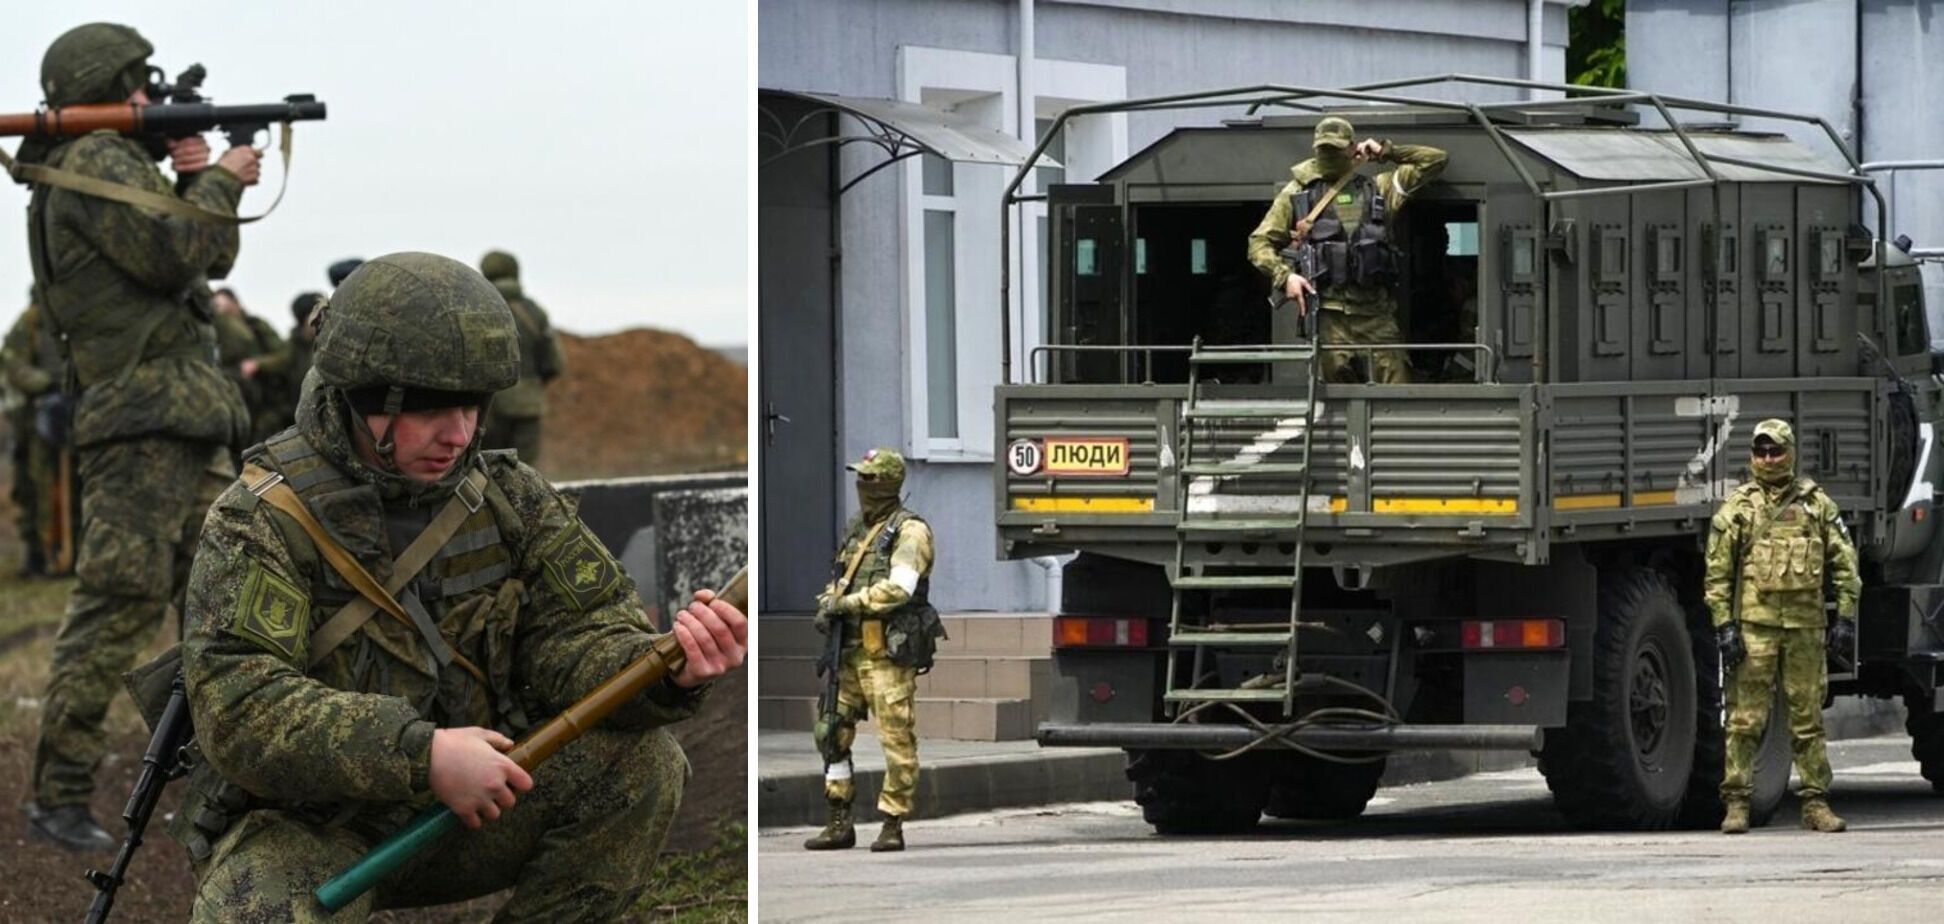 Формируется по ''чеченской'' модели: зачем на самом деле Путину 3-й армейский корпус